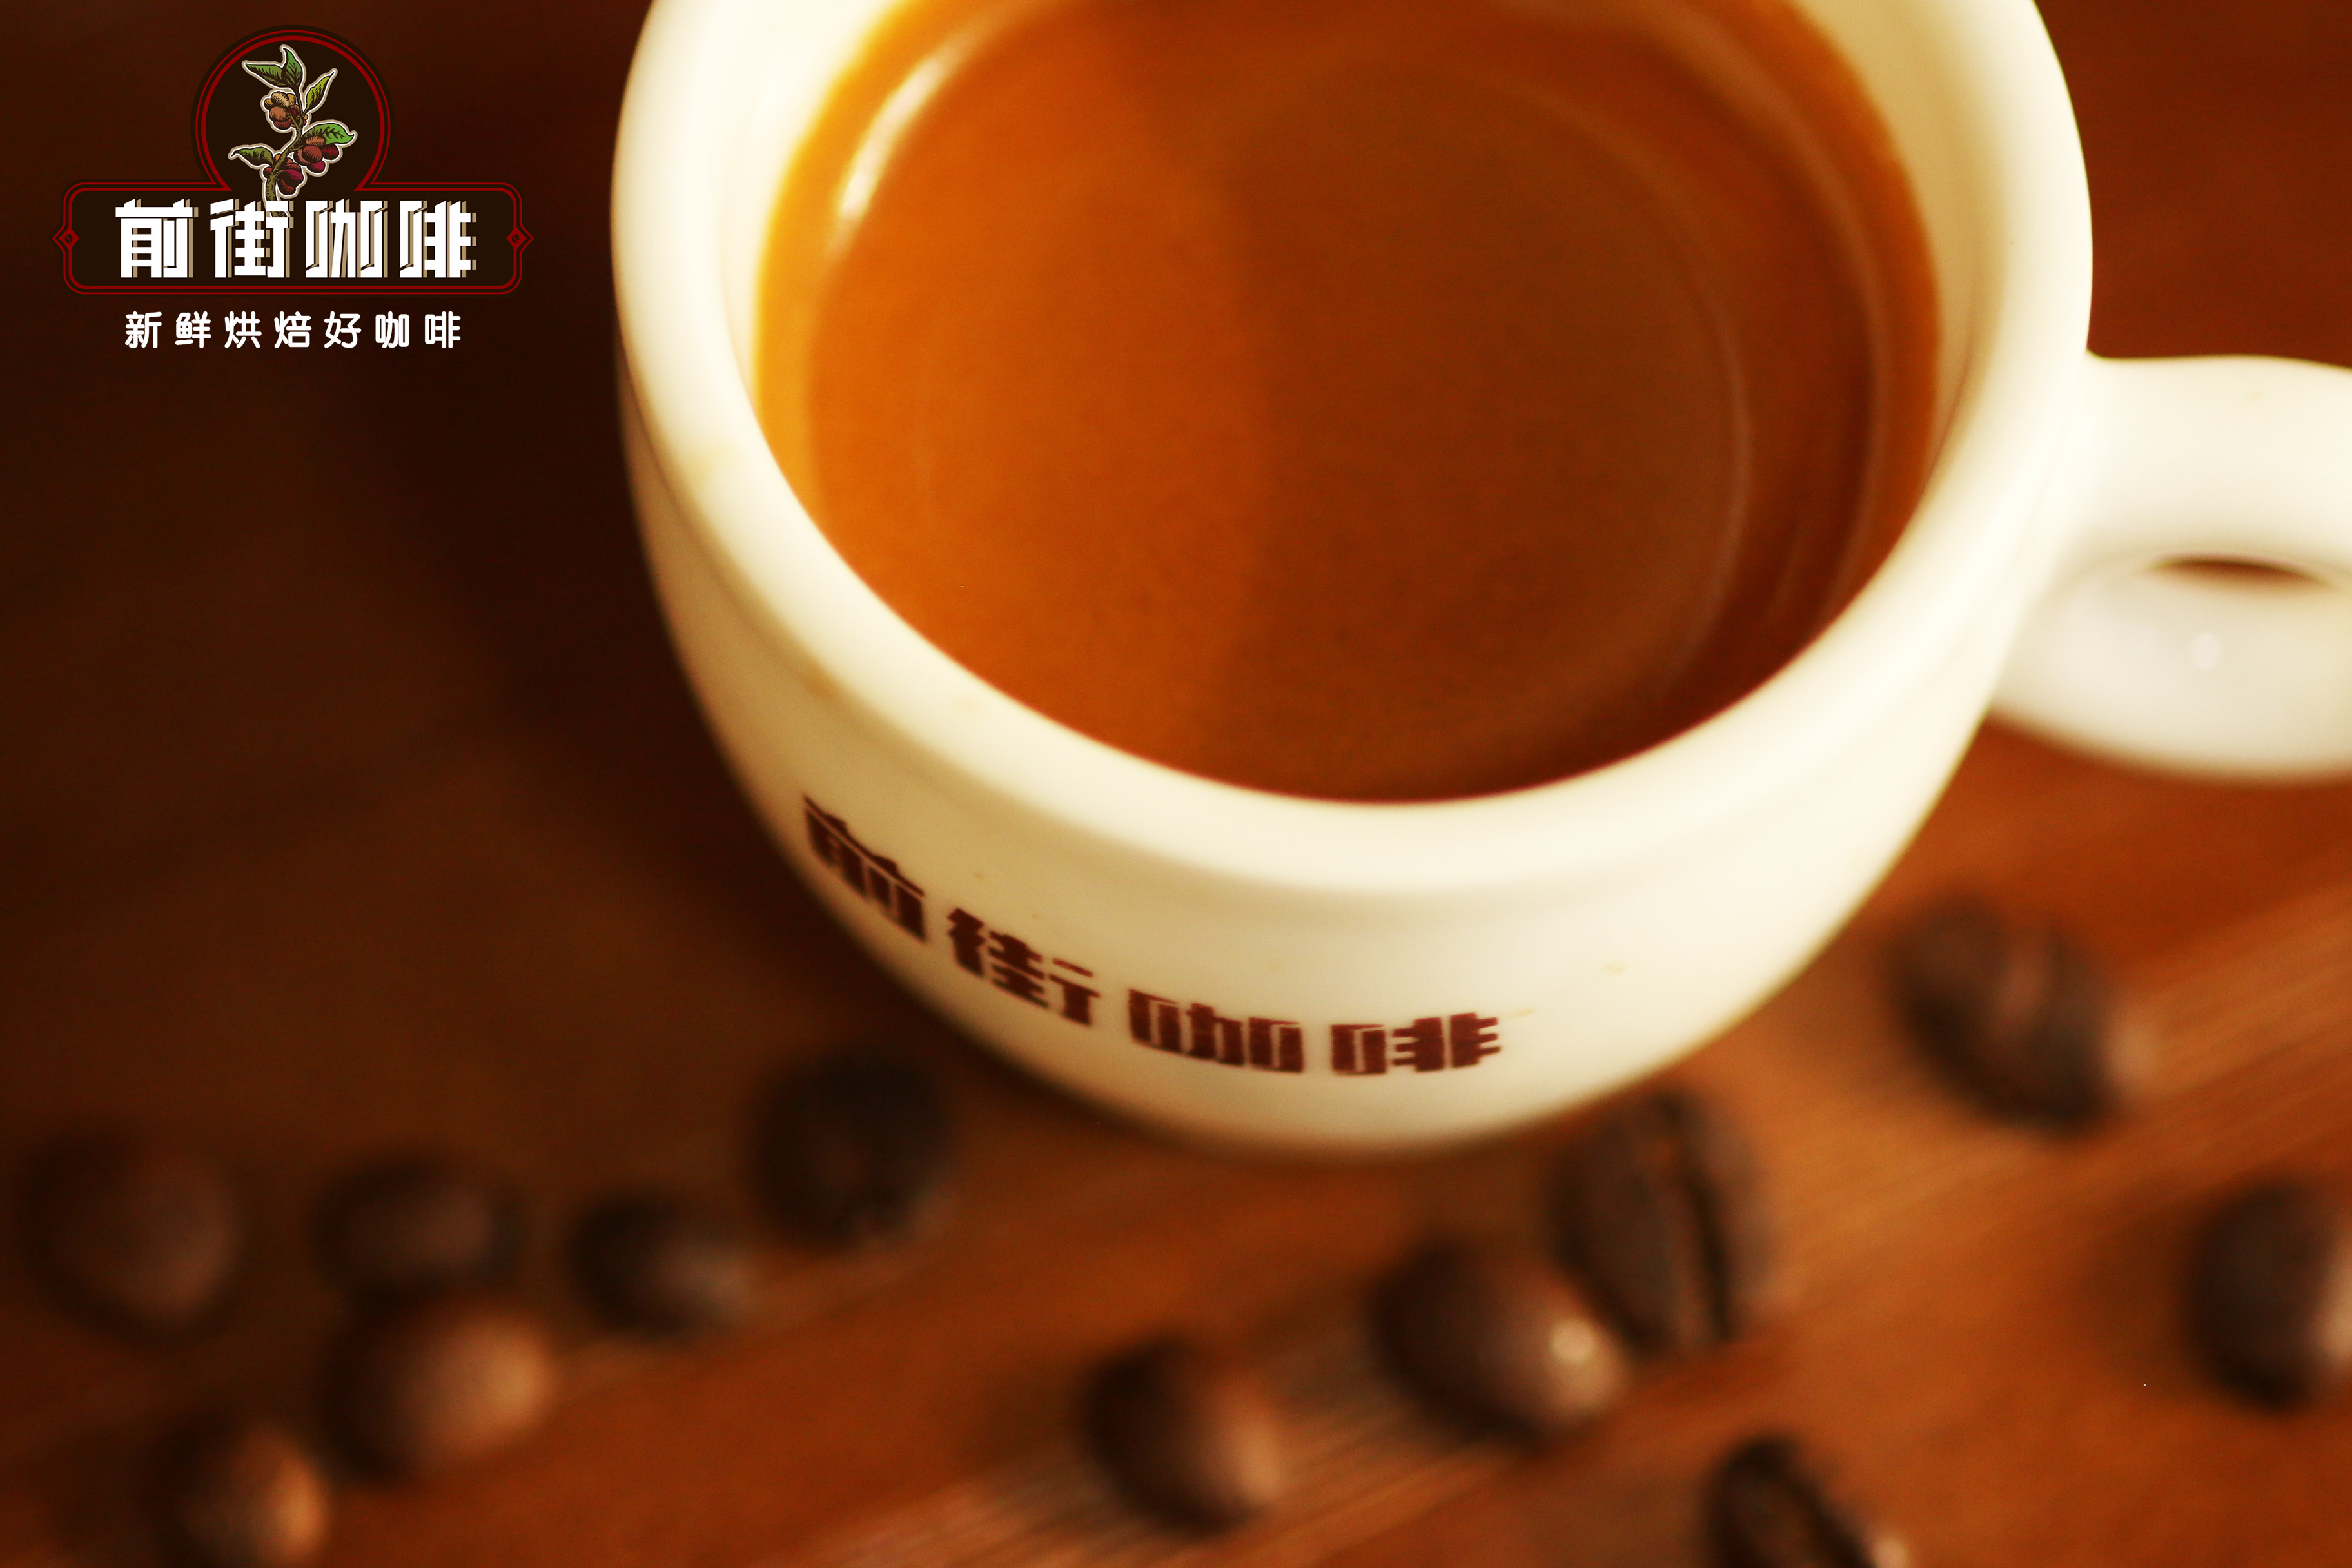 意式濃縮咖啡喝法基礎常識 意大利咖啡都有哪些特性風味特點?